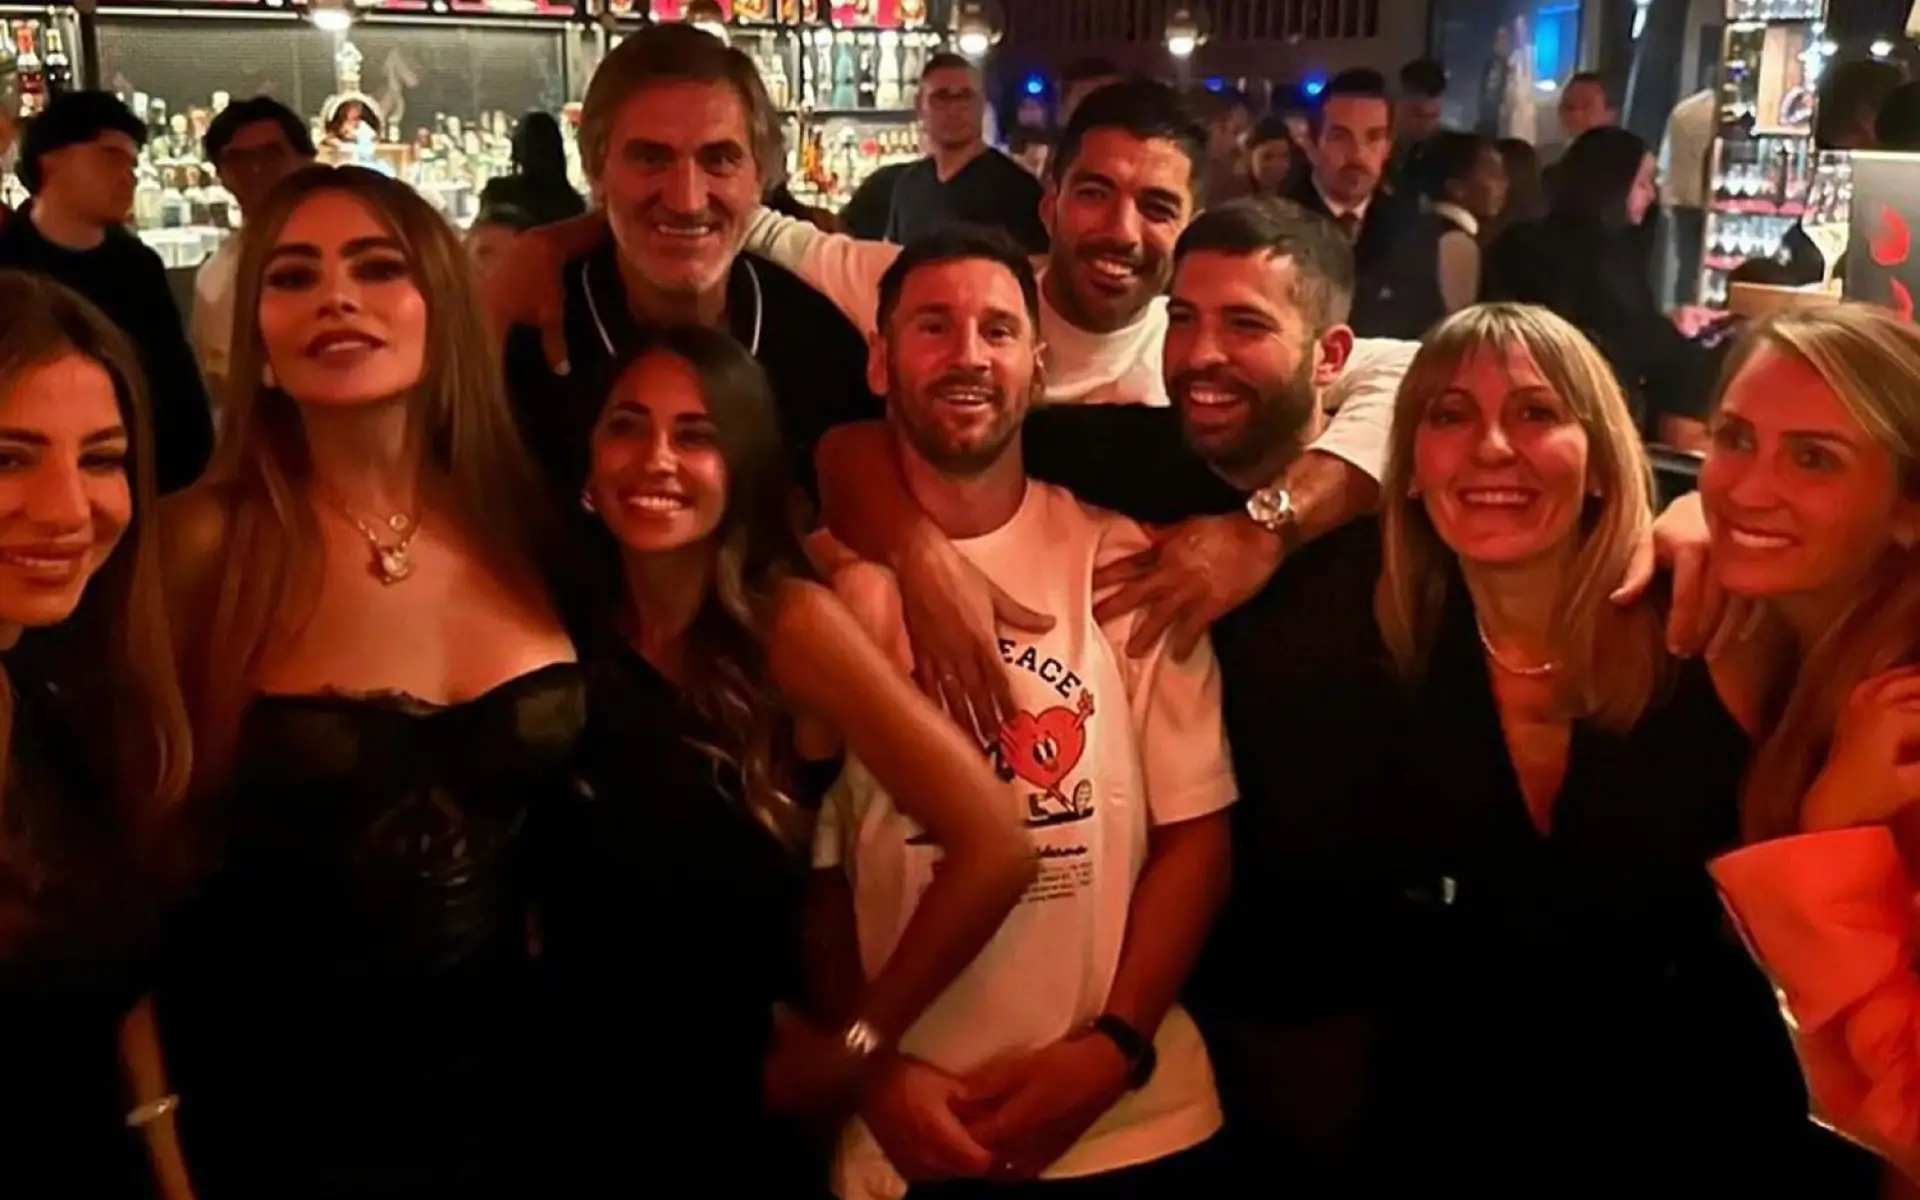 Sofia Vergara and Lionel Messi: A Night to Remember in Miami